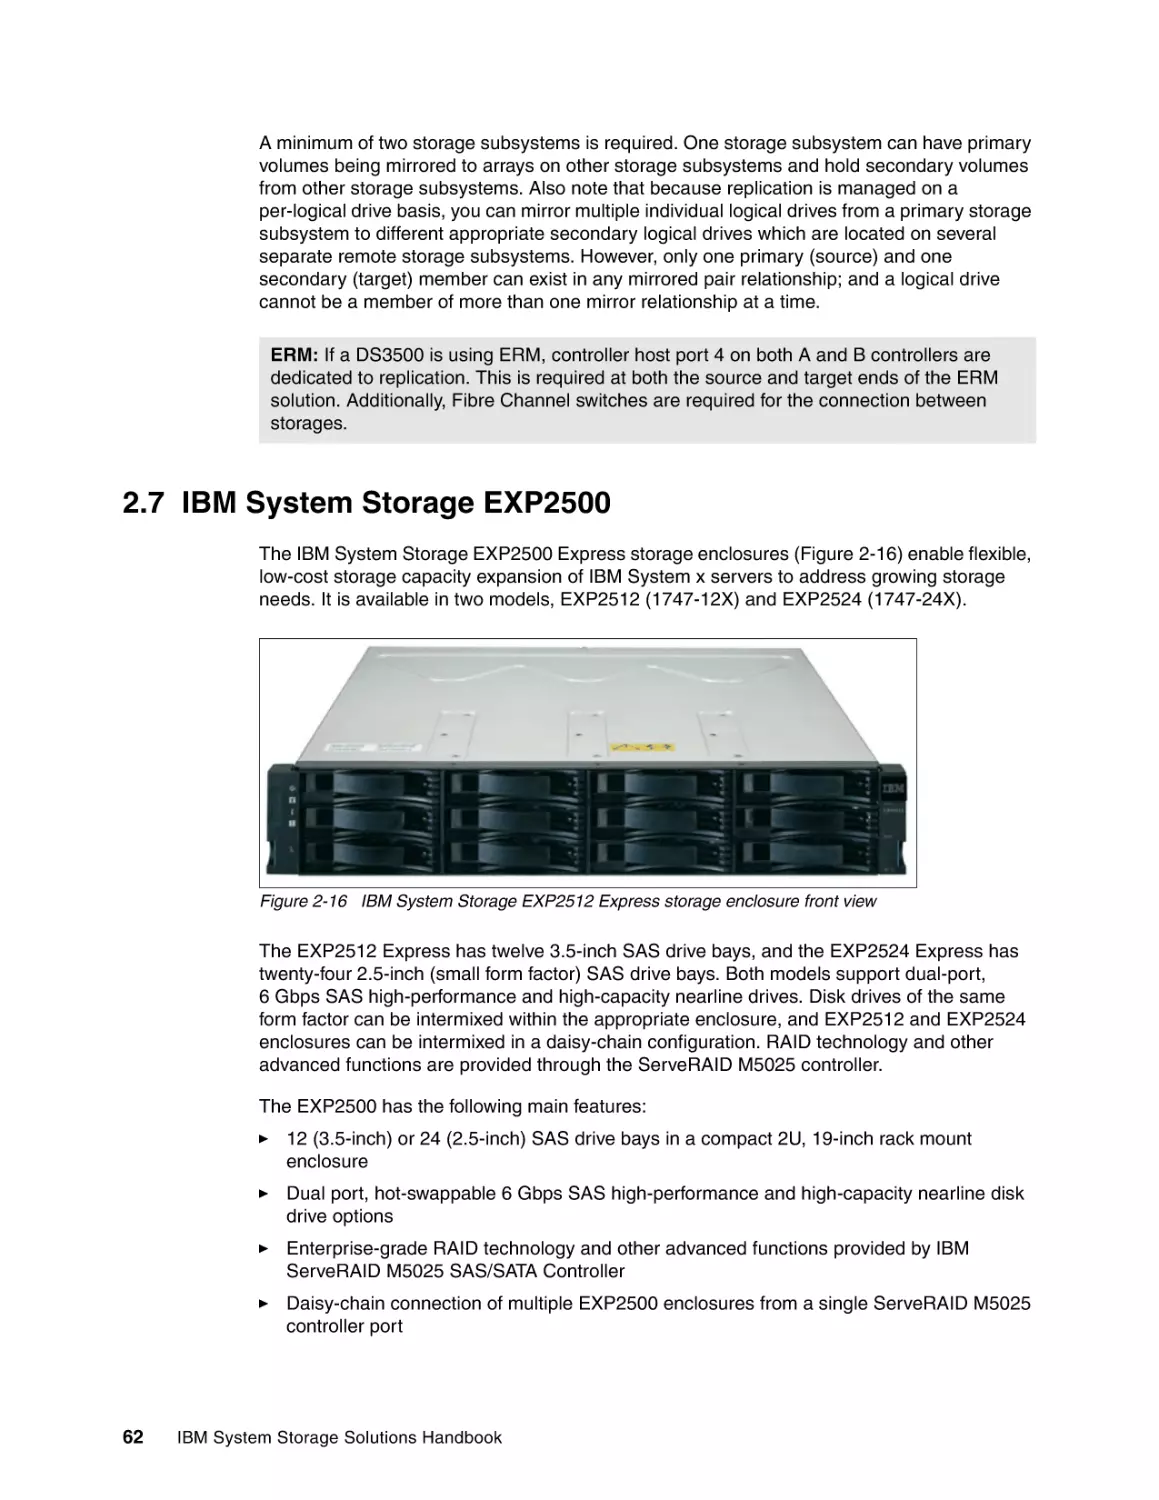 2.7 IBM System Storage EXP2500